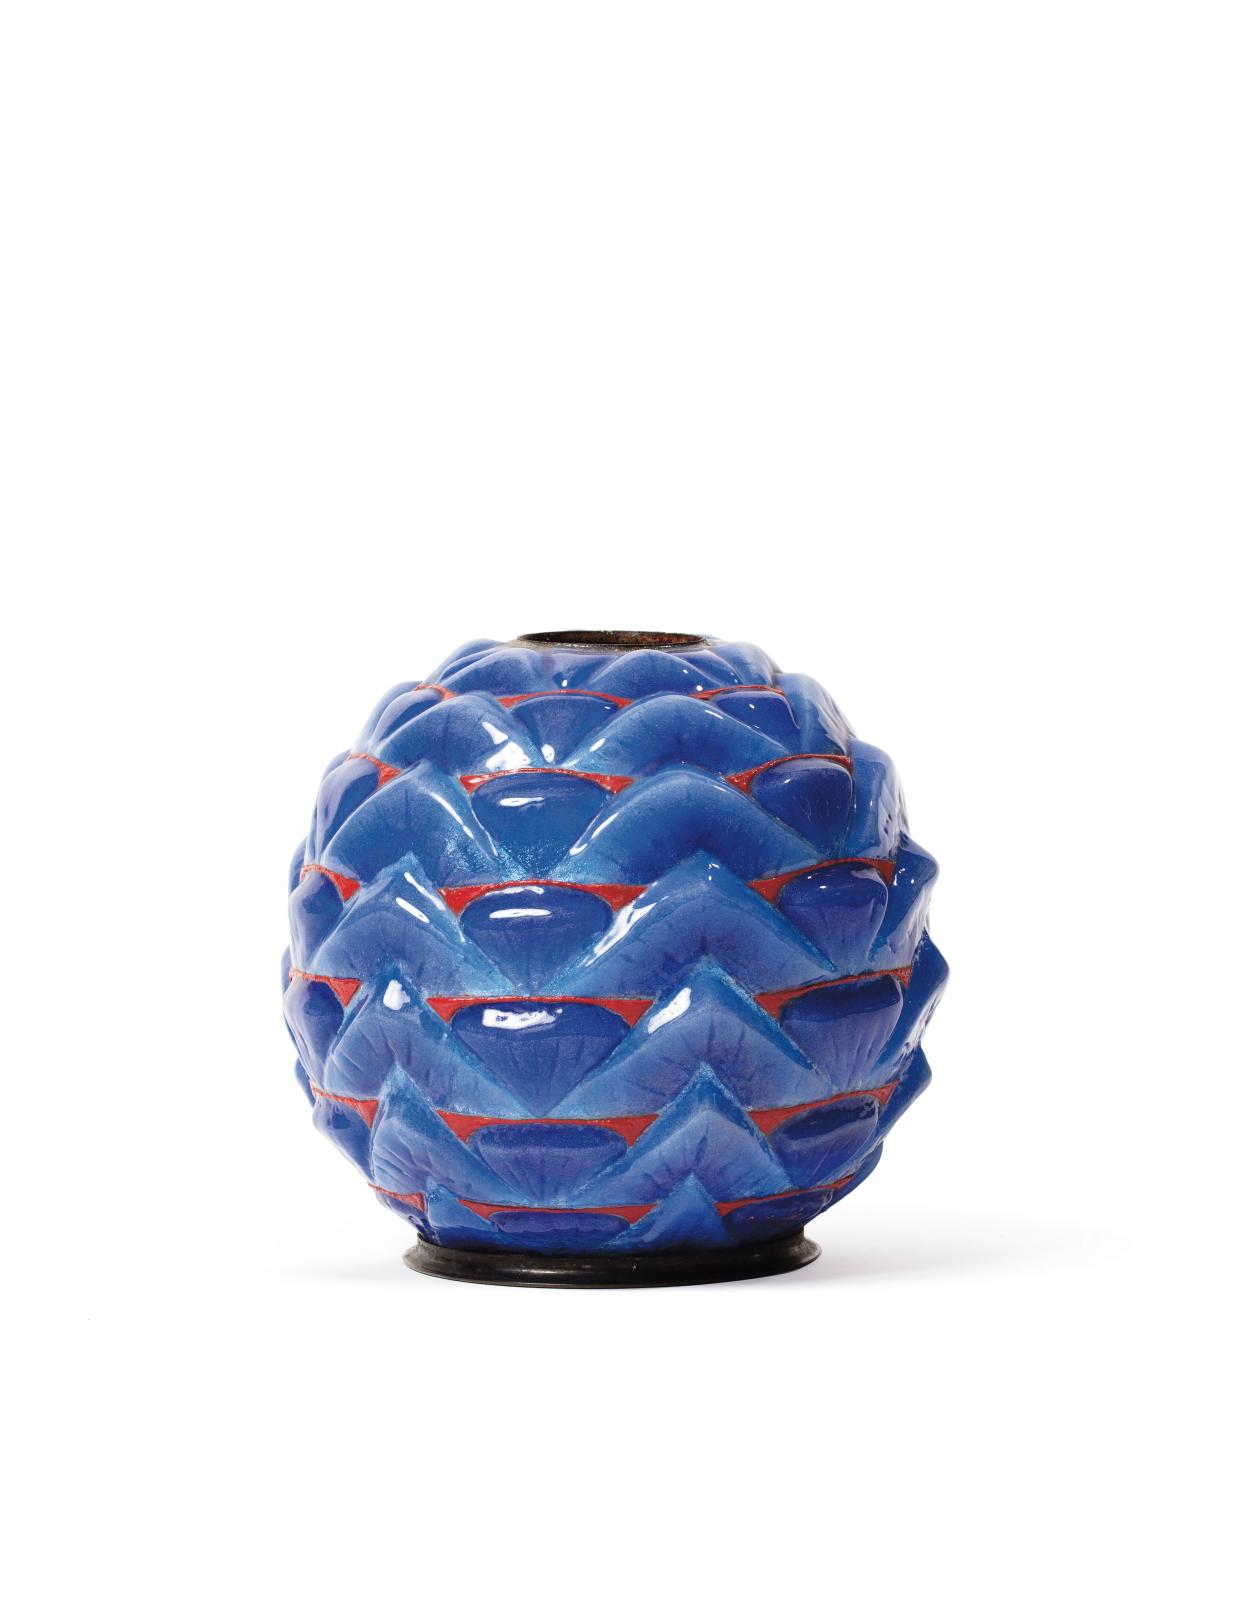 7 540 € Vase ovoïde en cuivre, à décor couvrant de palmettes en relief émaillé bleu égyptien et rouge sang-de-bœuf très contrasté, base et